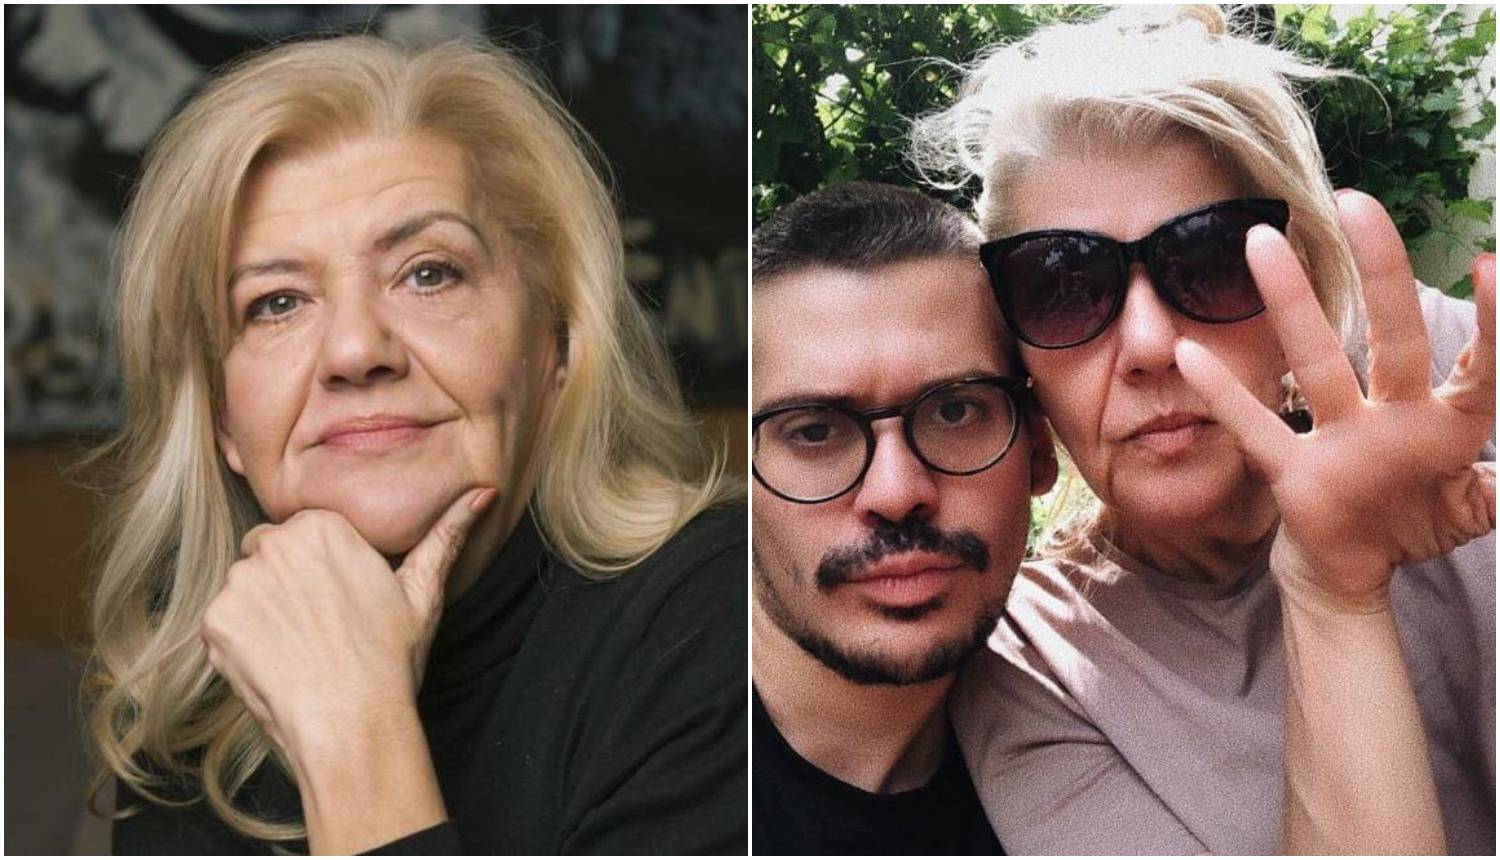 Sin Marine Tucaković: 'Da nije bilo mame nikada se ne bih izliječio od ovisnosti o heroinu'